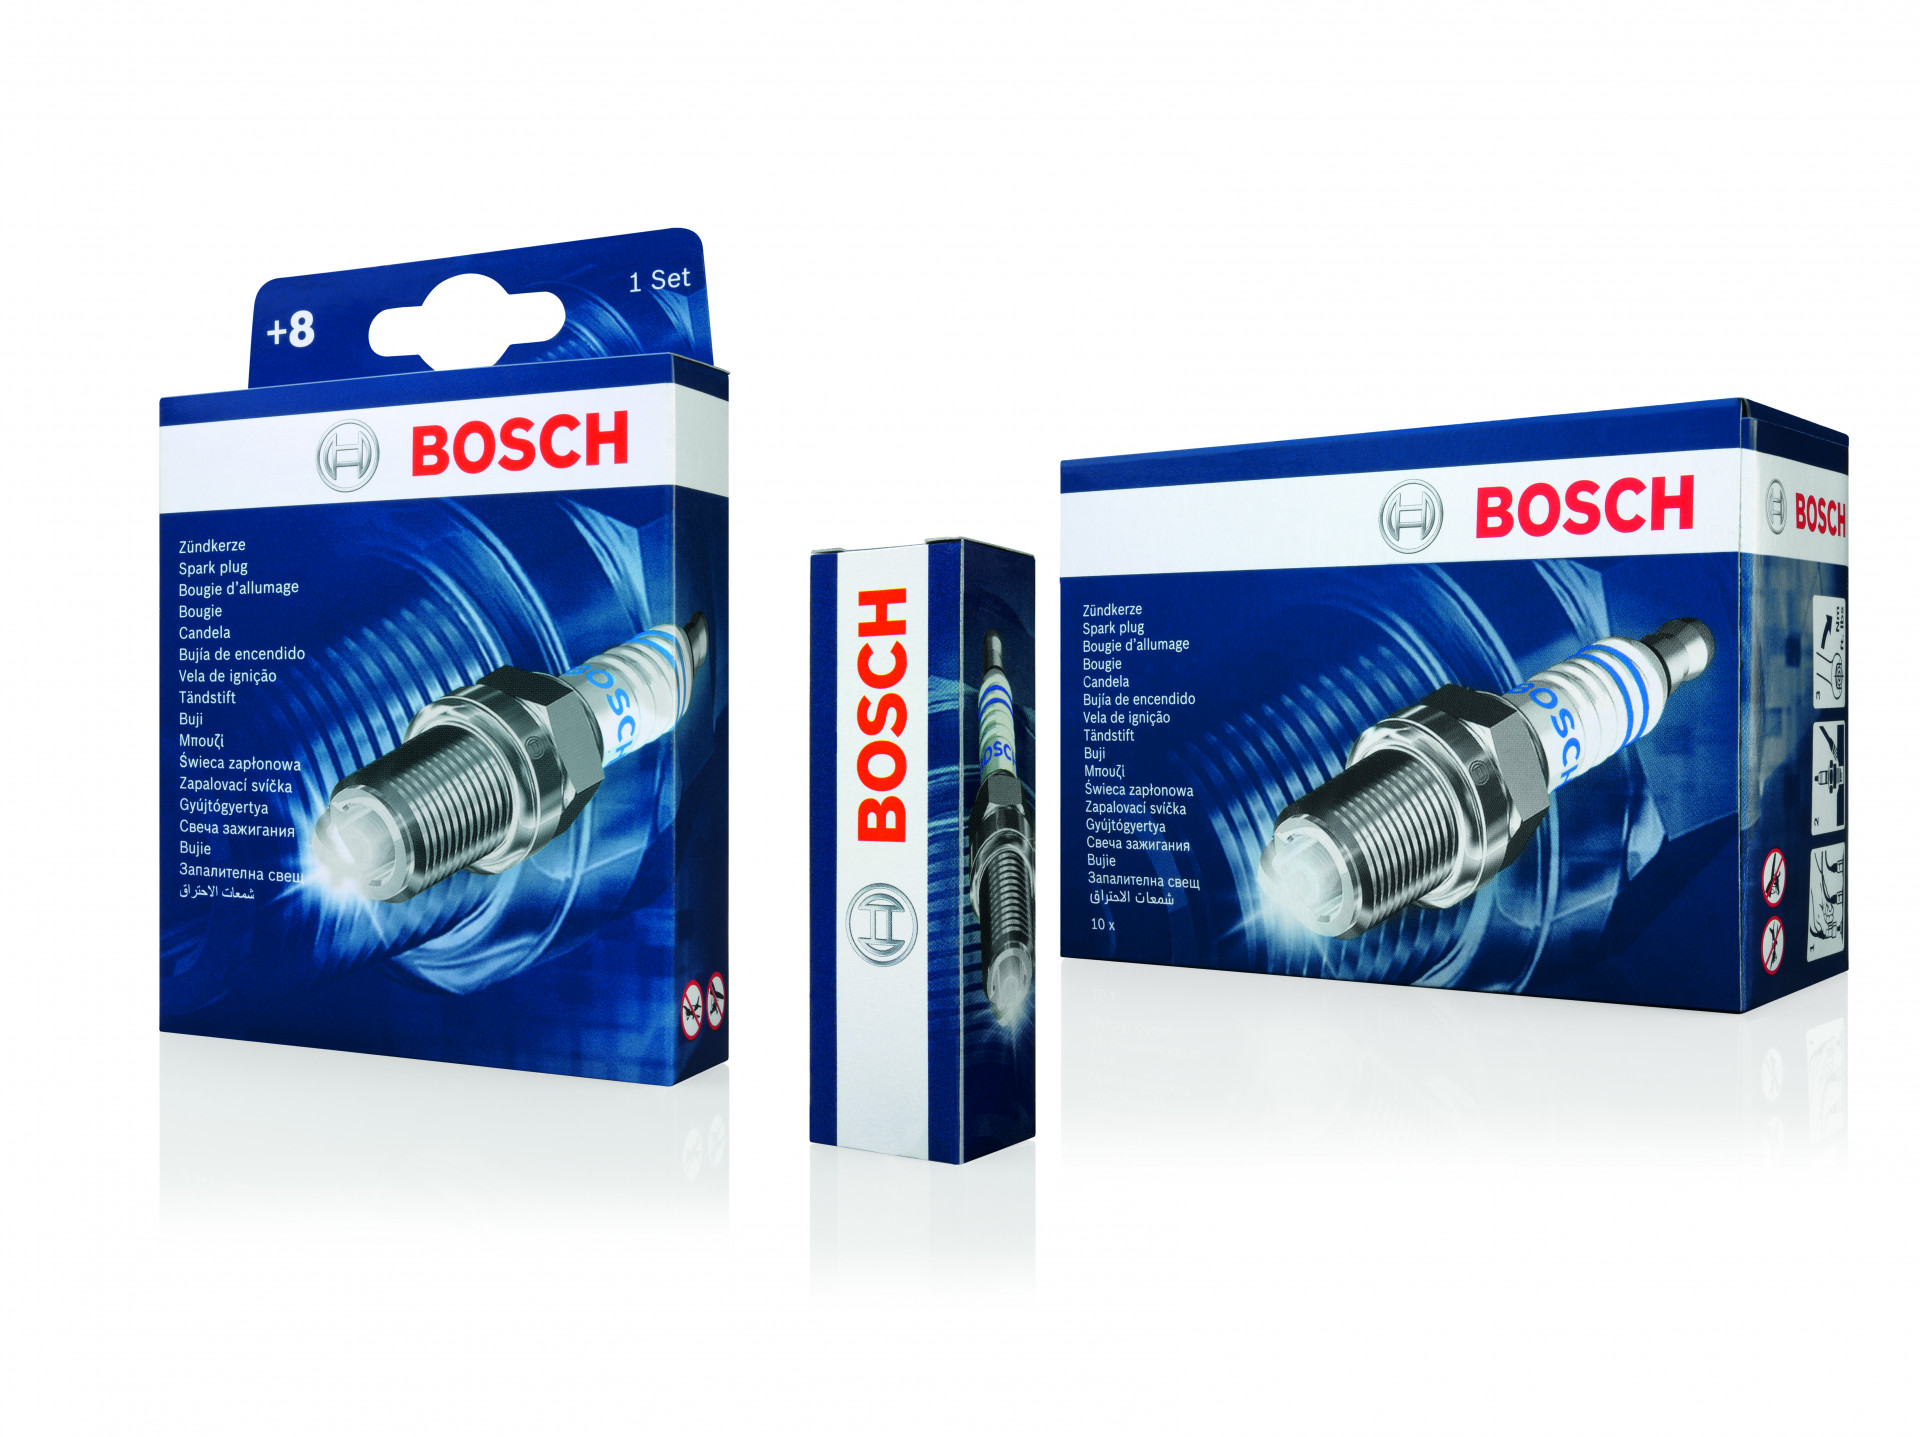 Bosch svjećice i grijači - Kvalitet koji određuje standarde